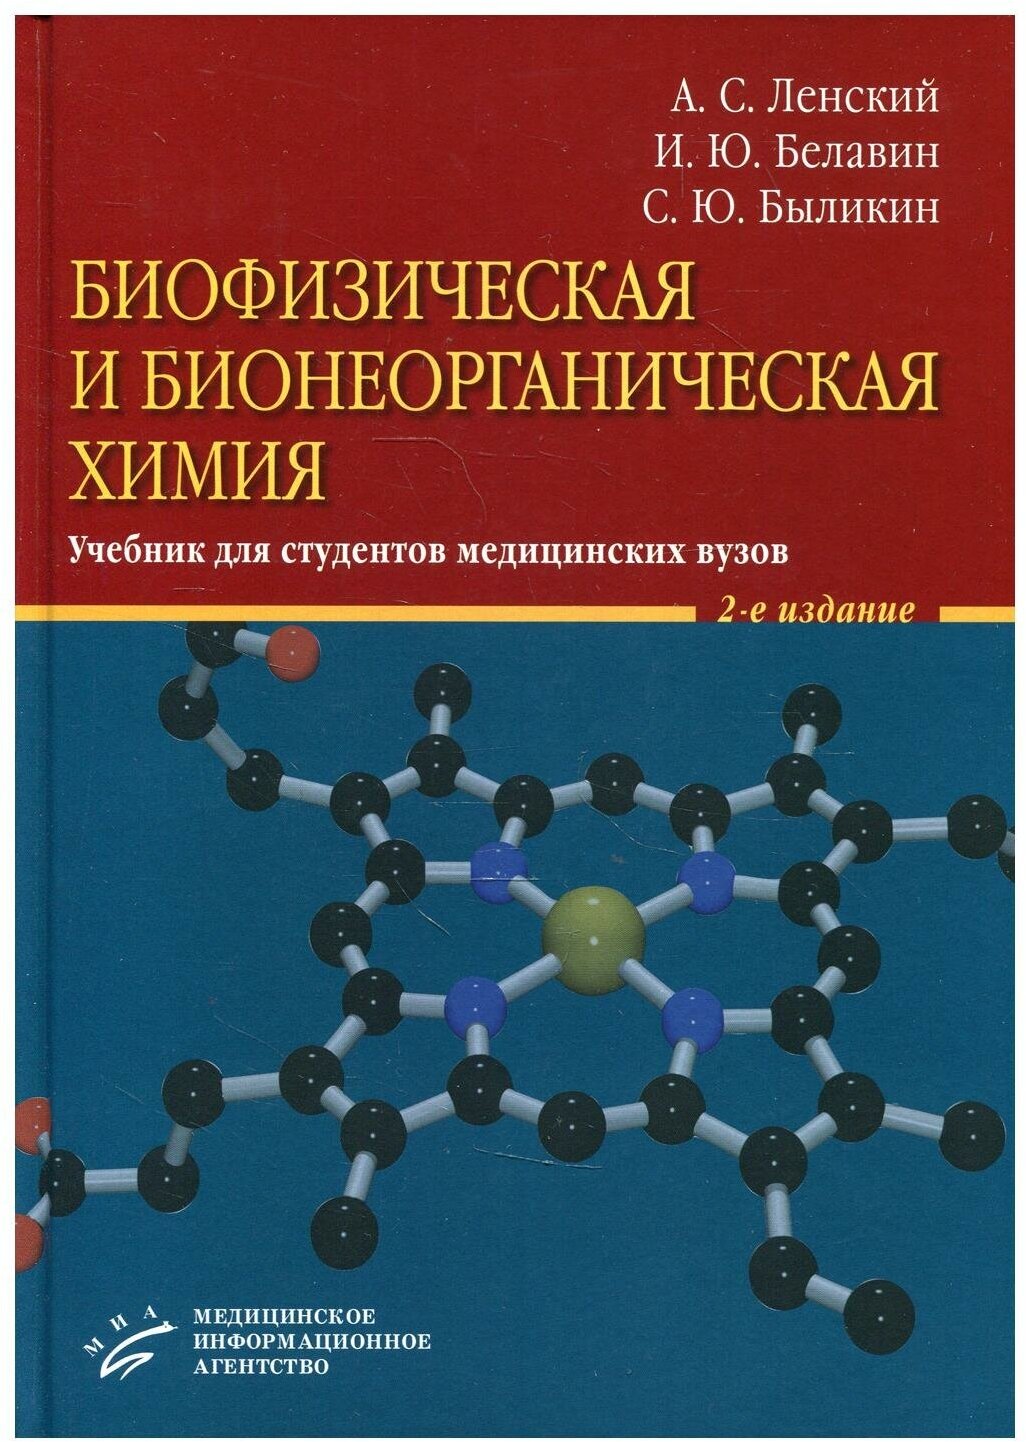 Биофизическая и бионеорганическая химия: Учебник для студентов медицинских ВУЗов. 2-е изд, испр. и доп